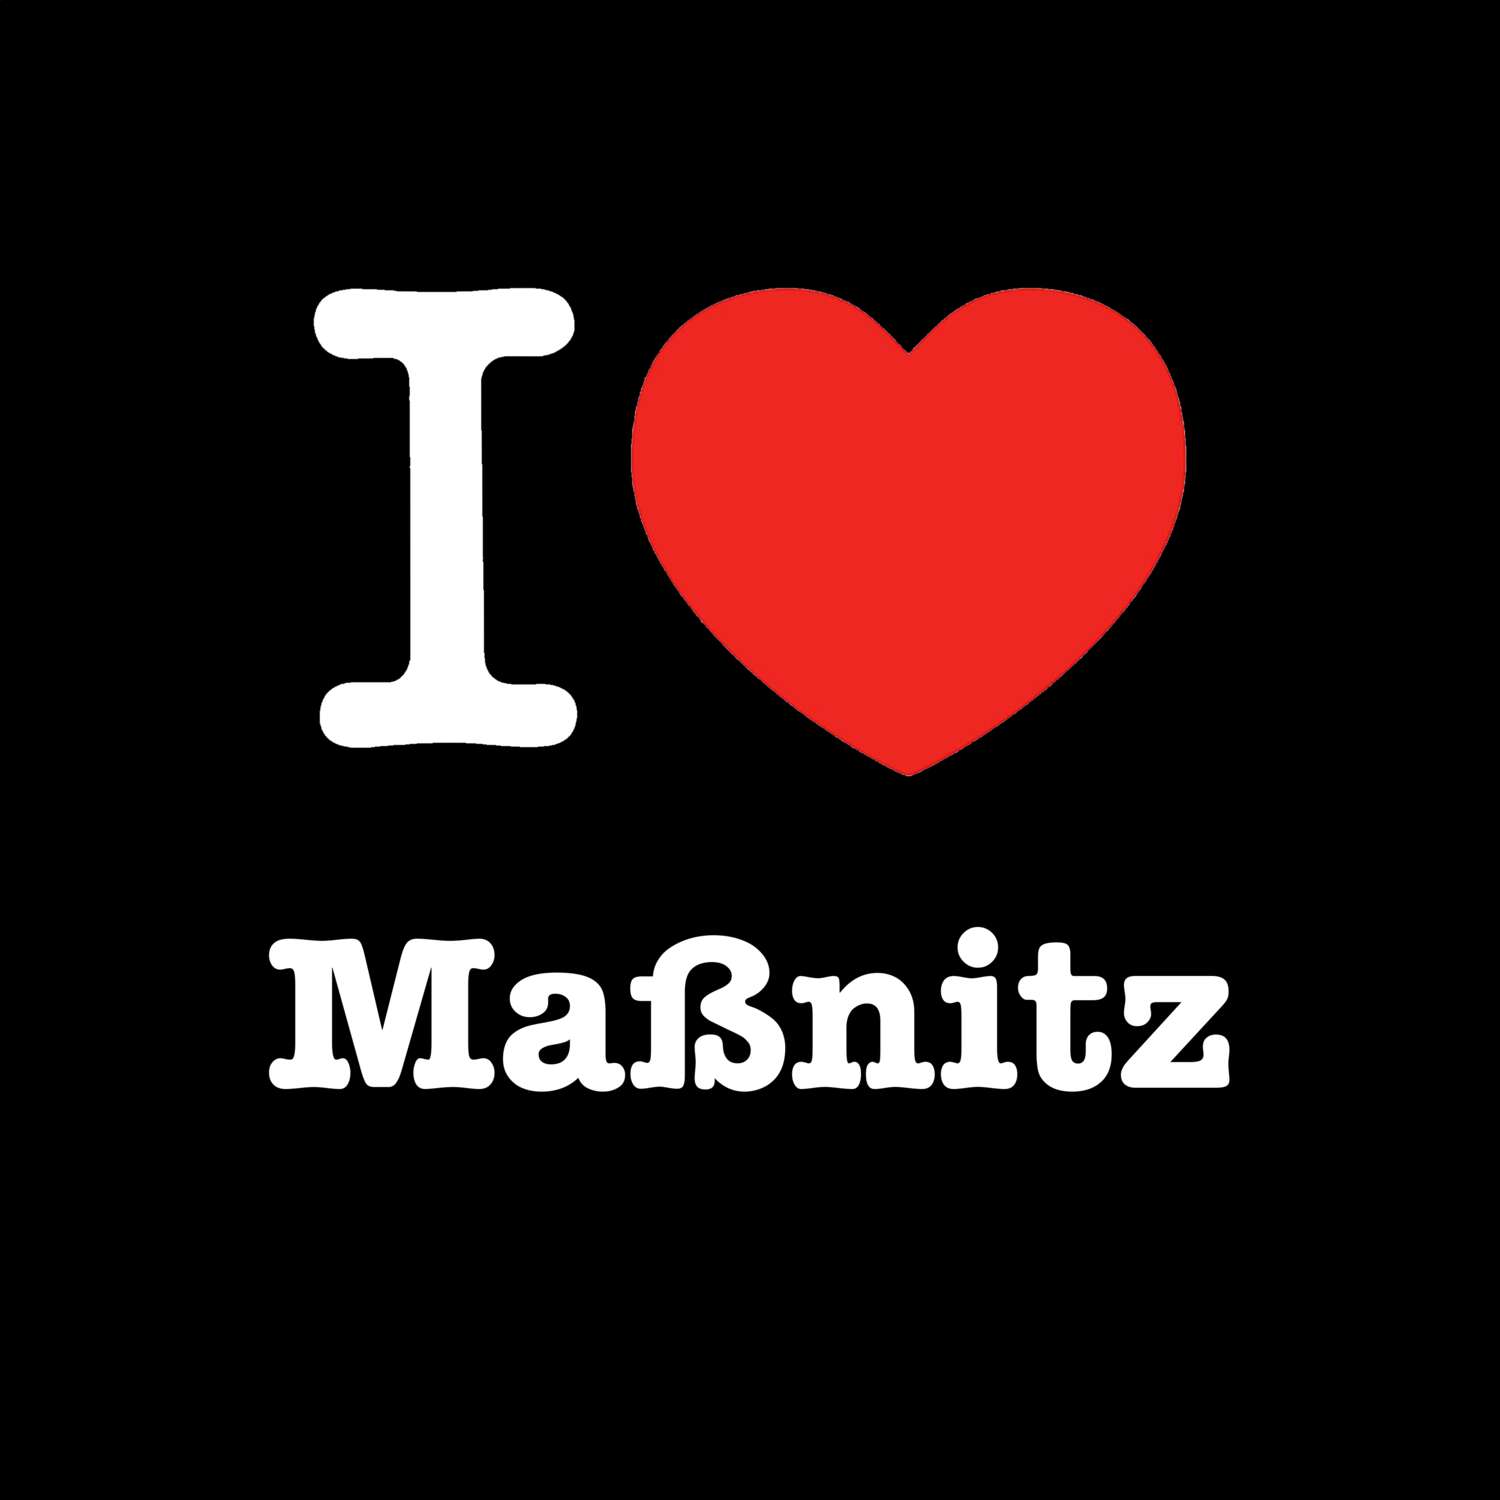 Maßnitz T-Shirt »I love«